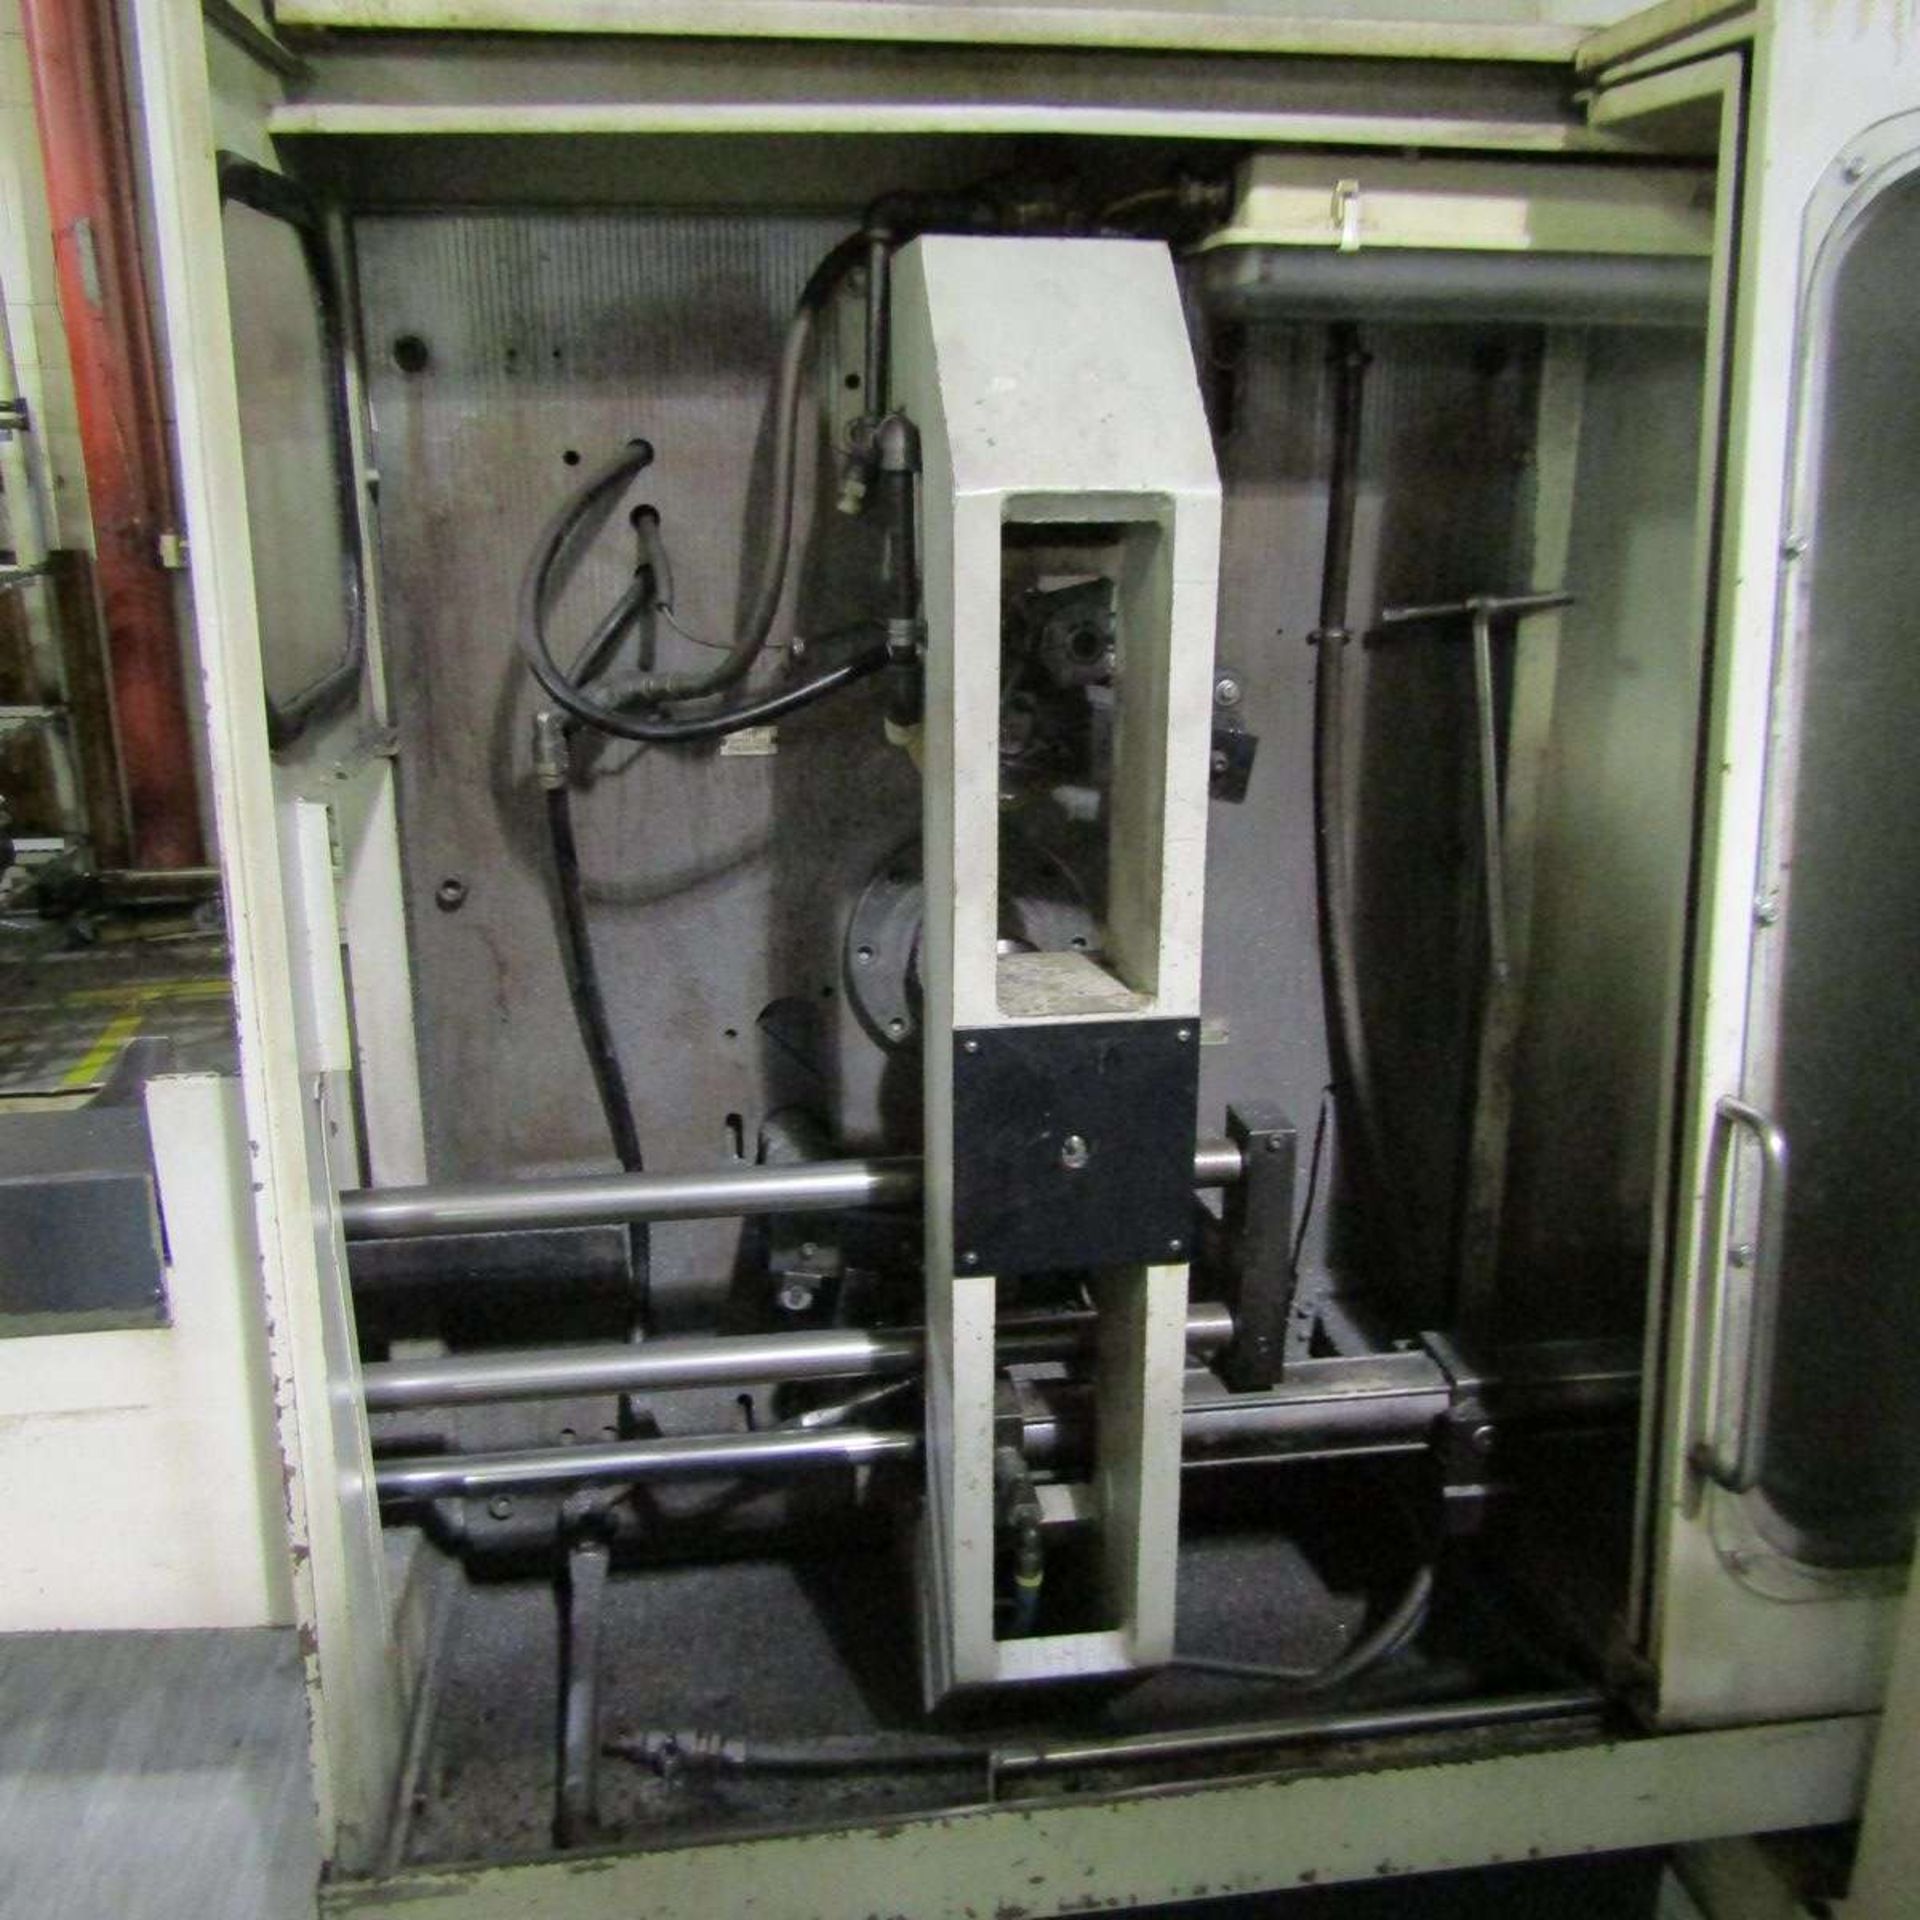 1983 Samputensili SM2TA Chamfer Machine - Image 3 of 5